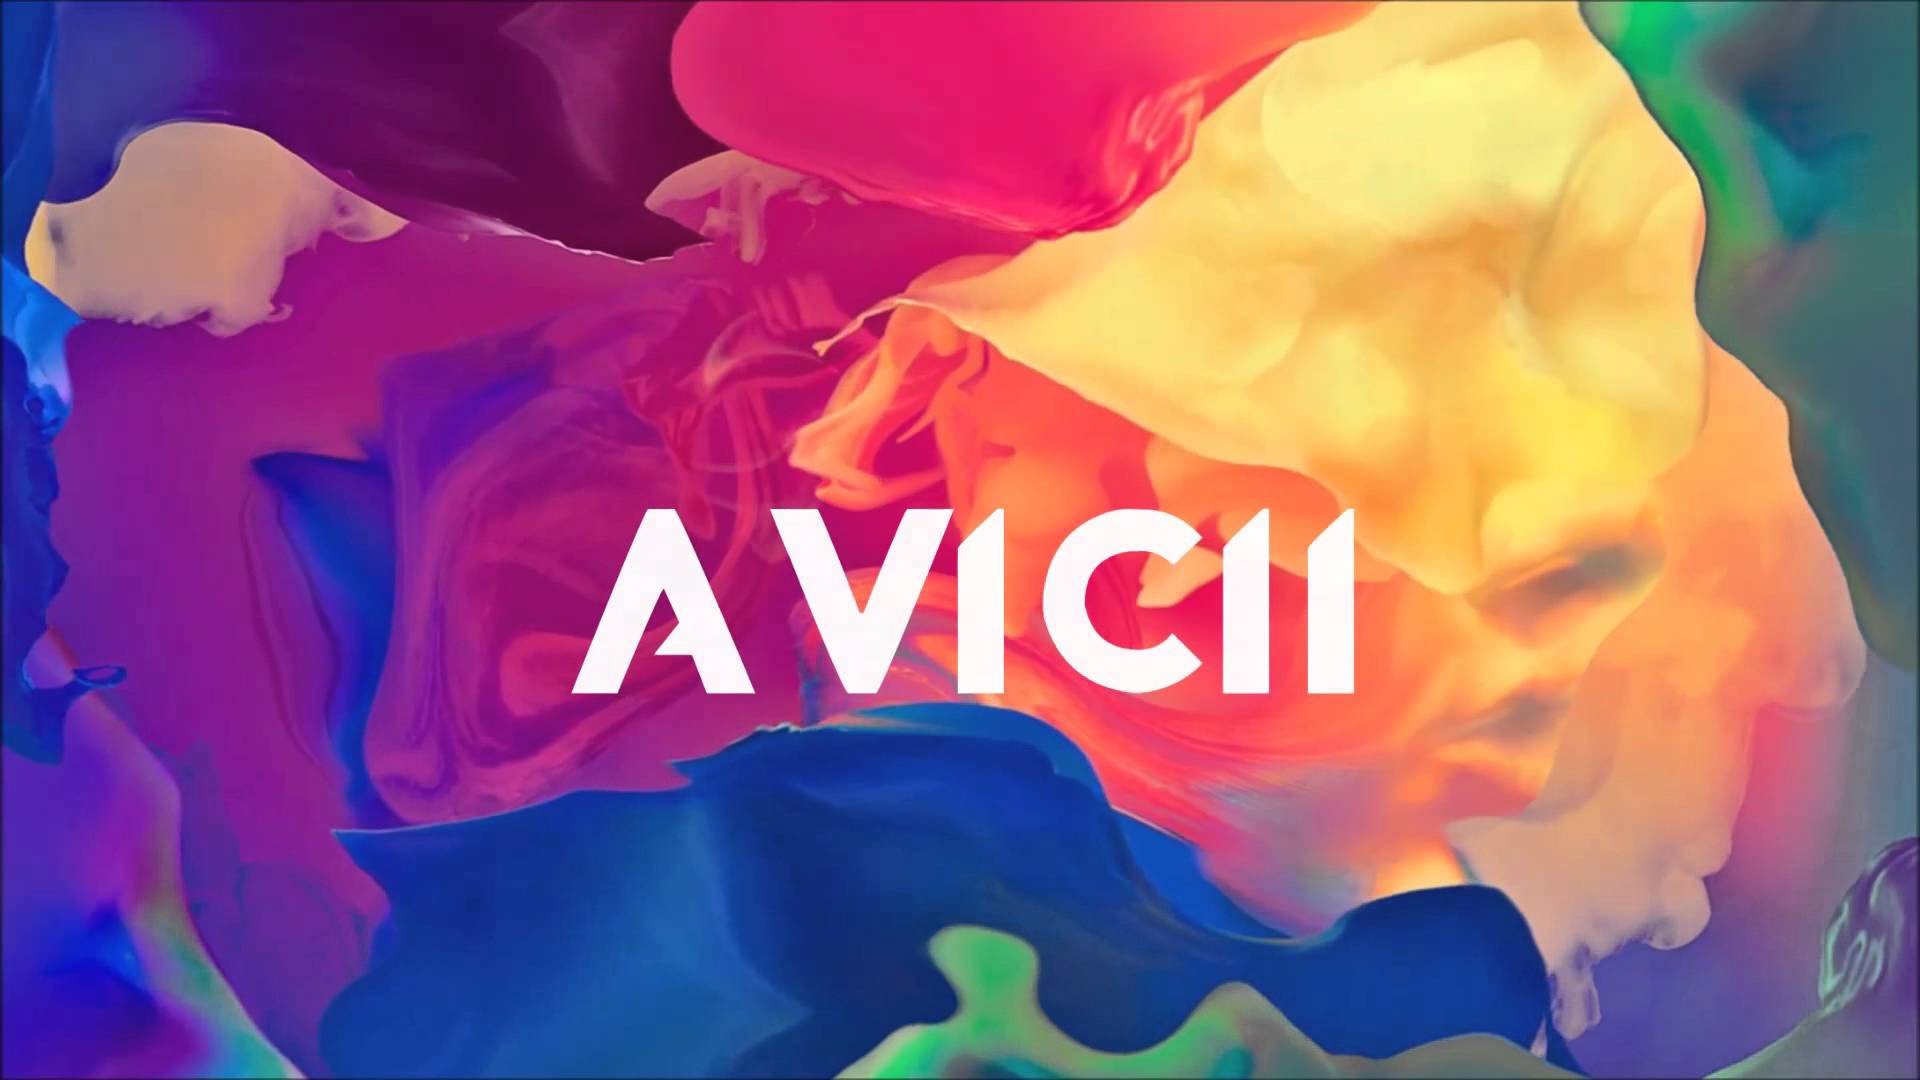 Avicii For Desktop Wallpapers Wallpaper Cave